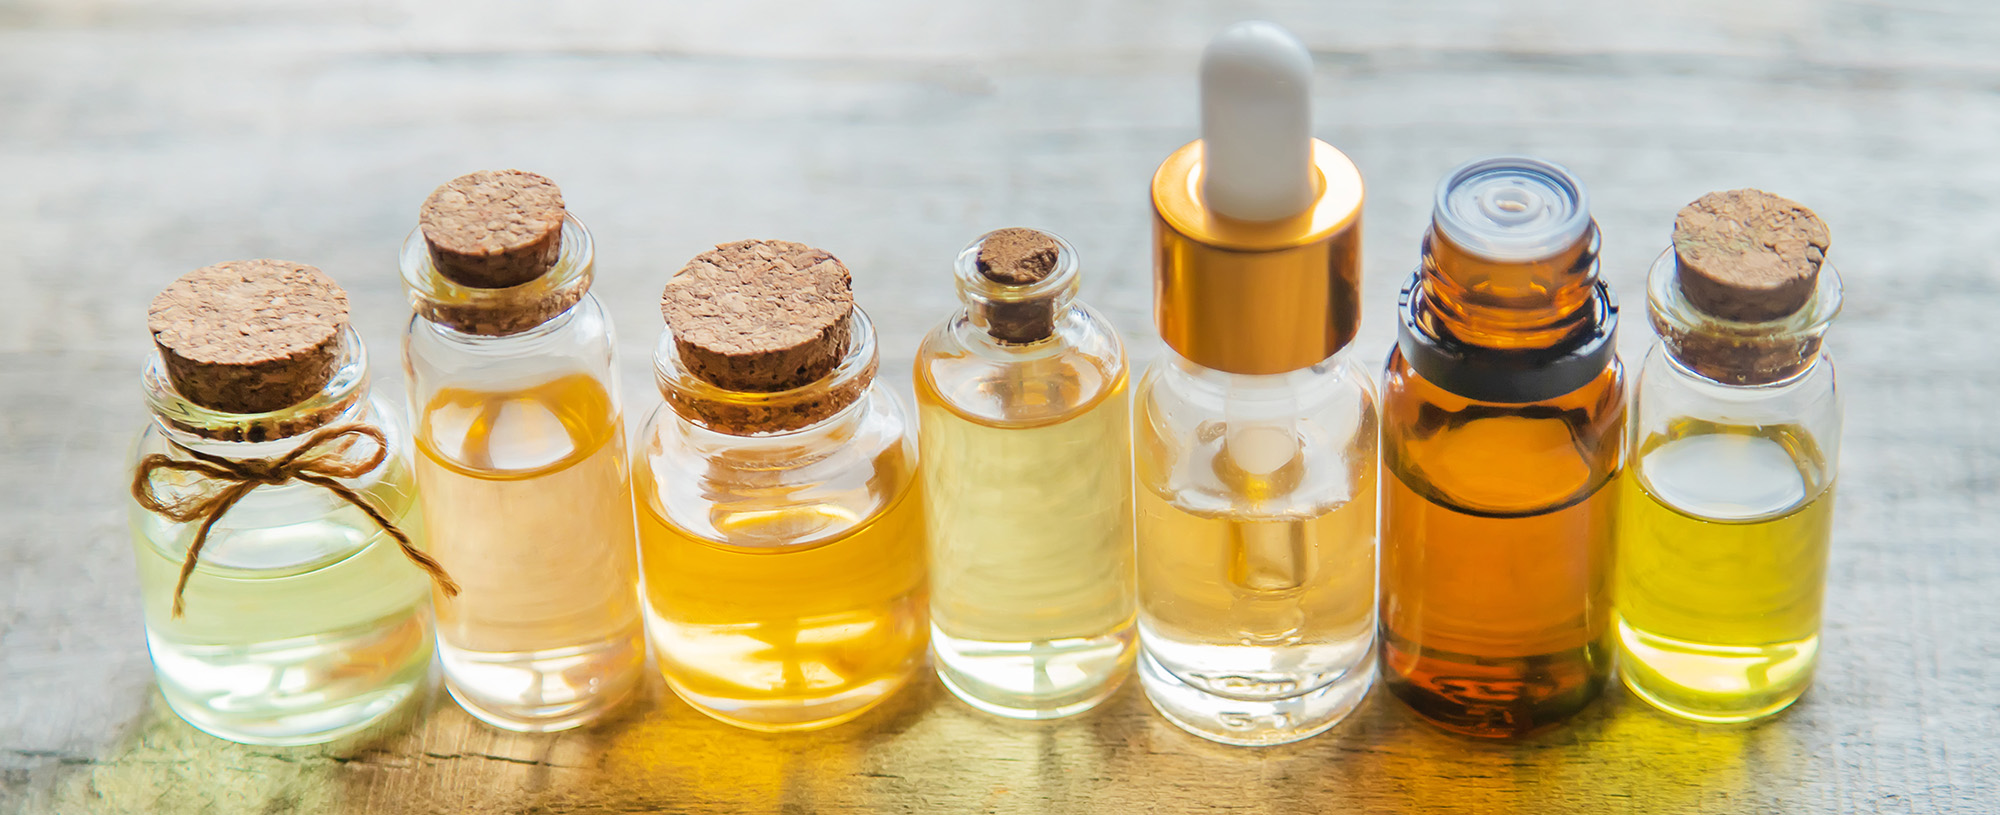 Essential Oil Samples in a mini glass bottles Adlermech